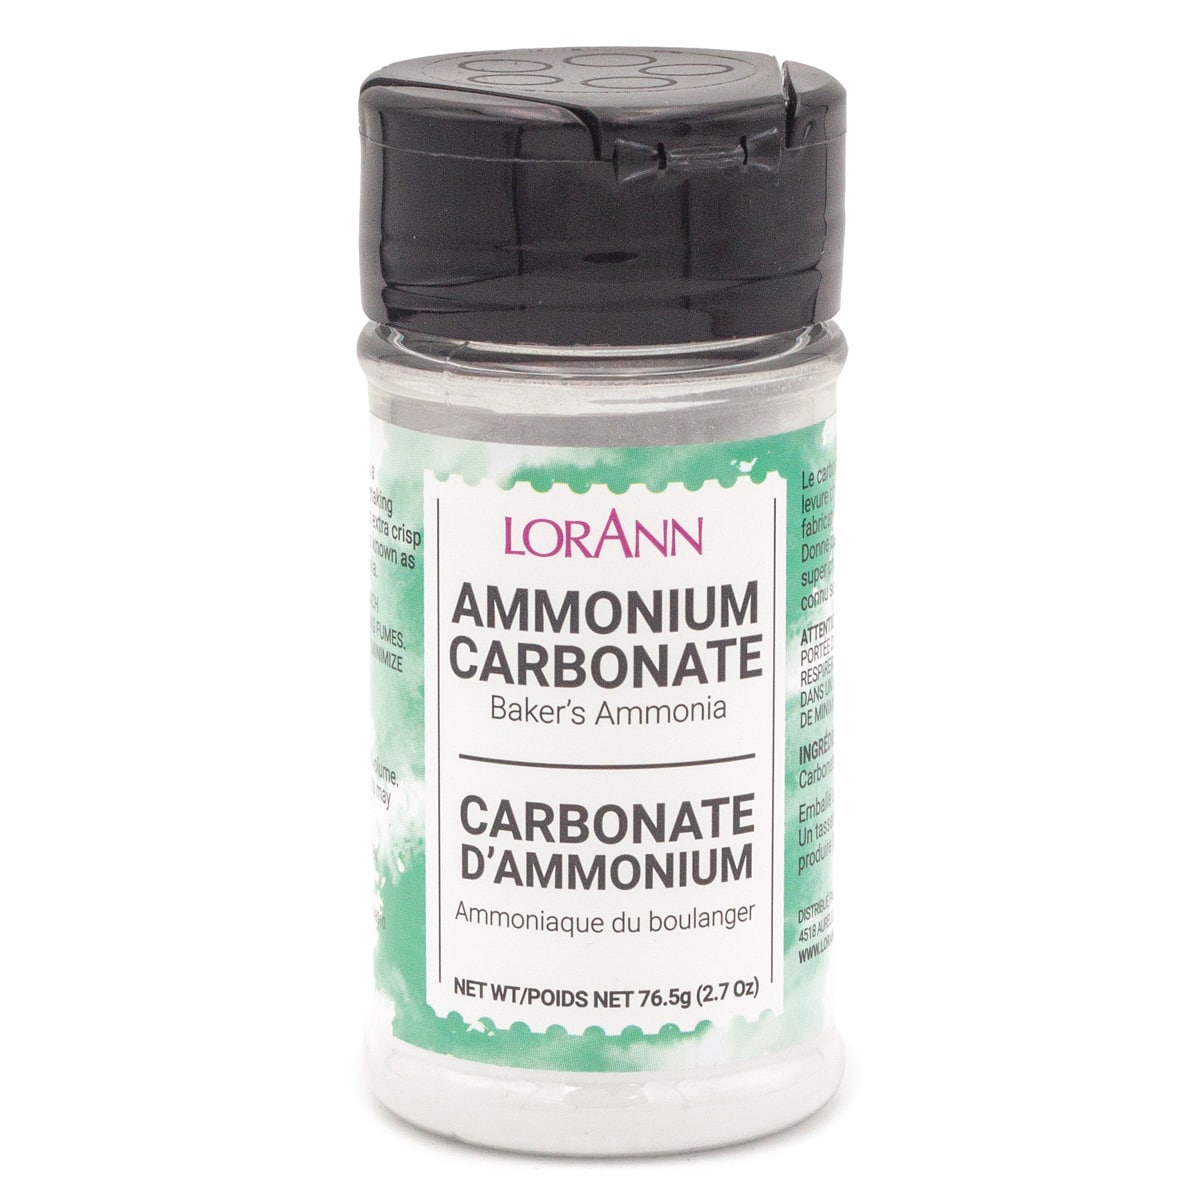 12 Pack: LorAnn Ammonium Carbonate, 2.7oz.